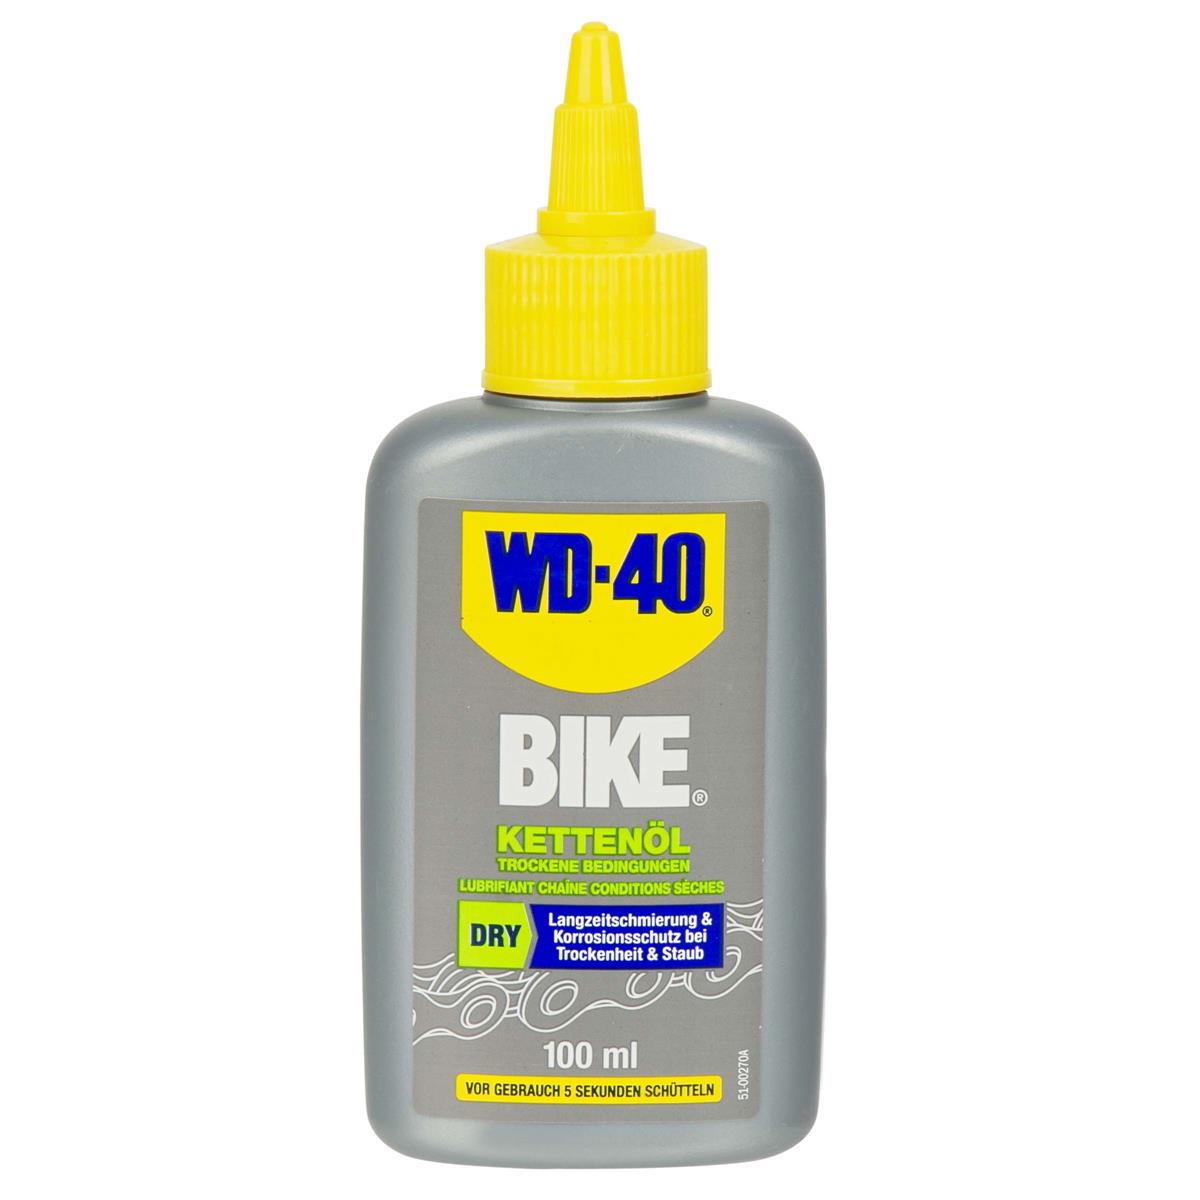 WD-40 Lubrificante Catena Bike Dry, 100 ml